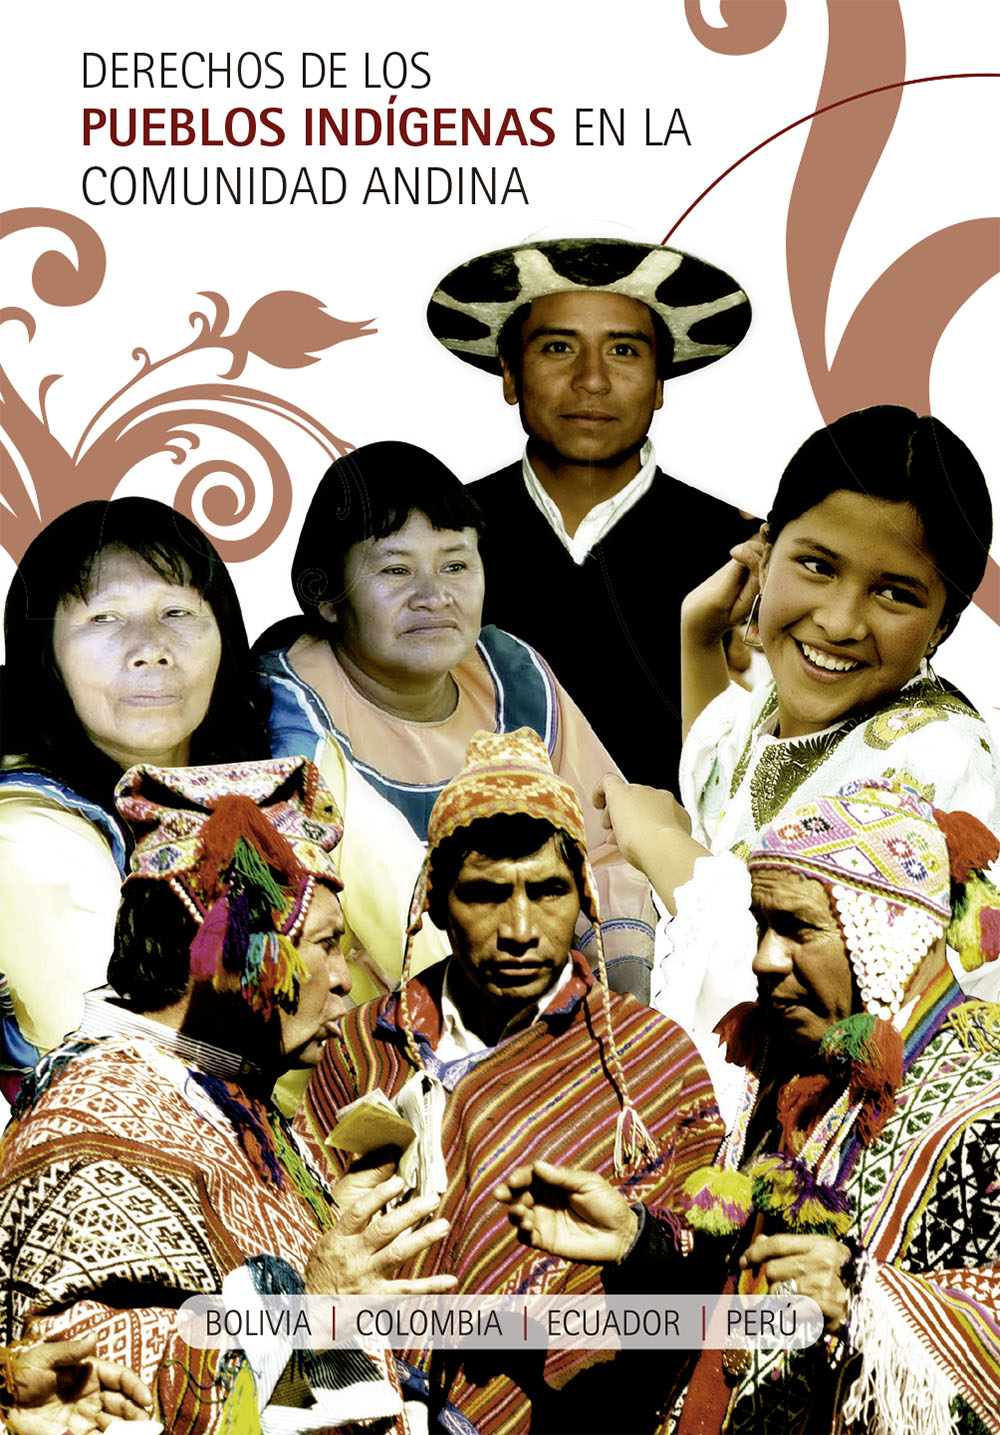 Derechos de los pueblos indígenas en la Comunidad Andina<br/>Lima, Perú: Comunidad Andina. 2013. 46 páginas 